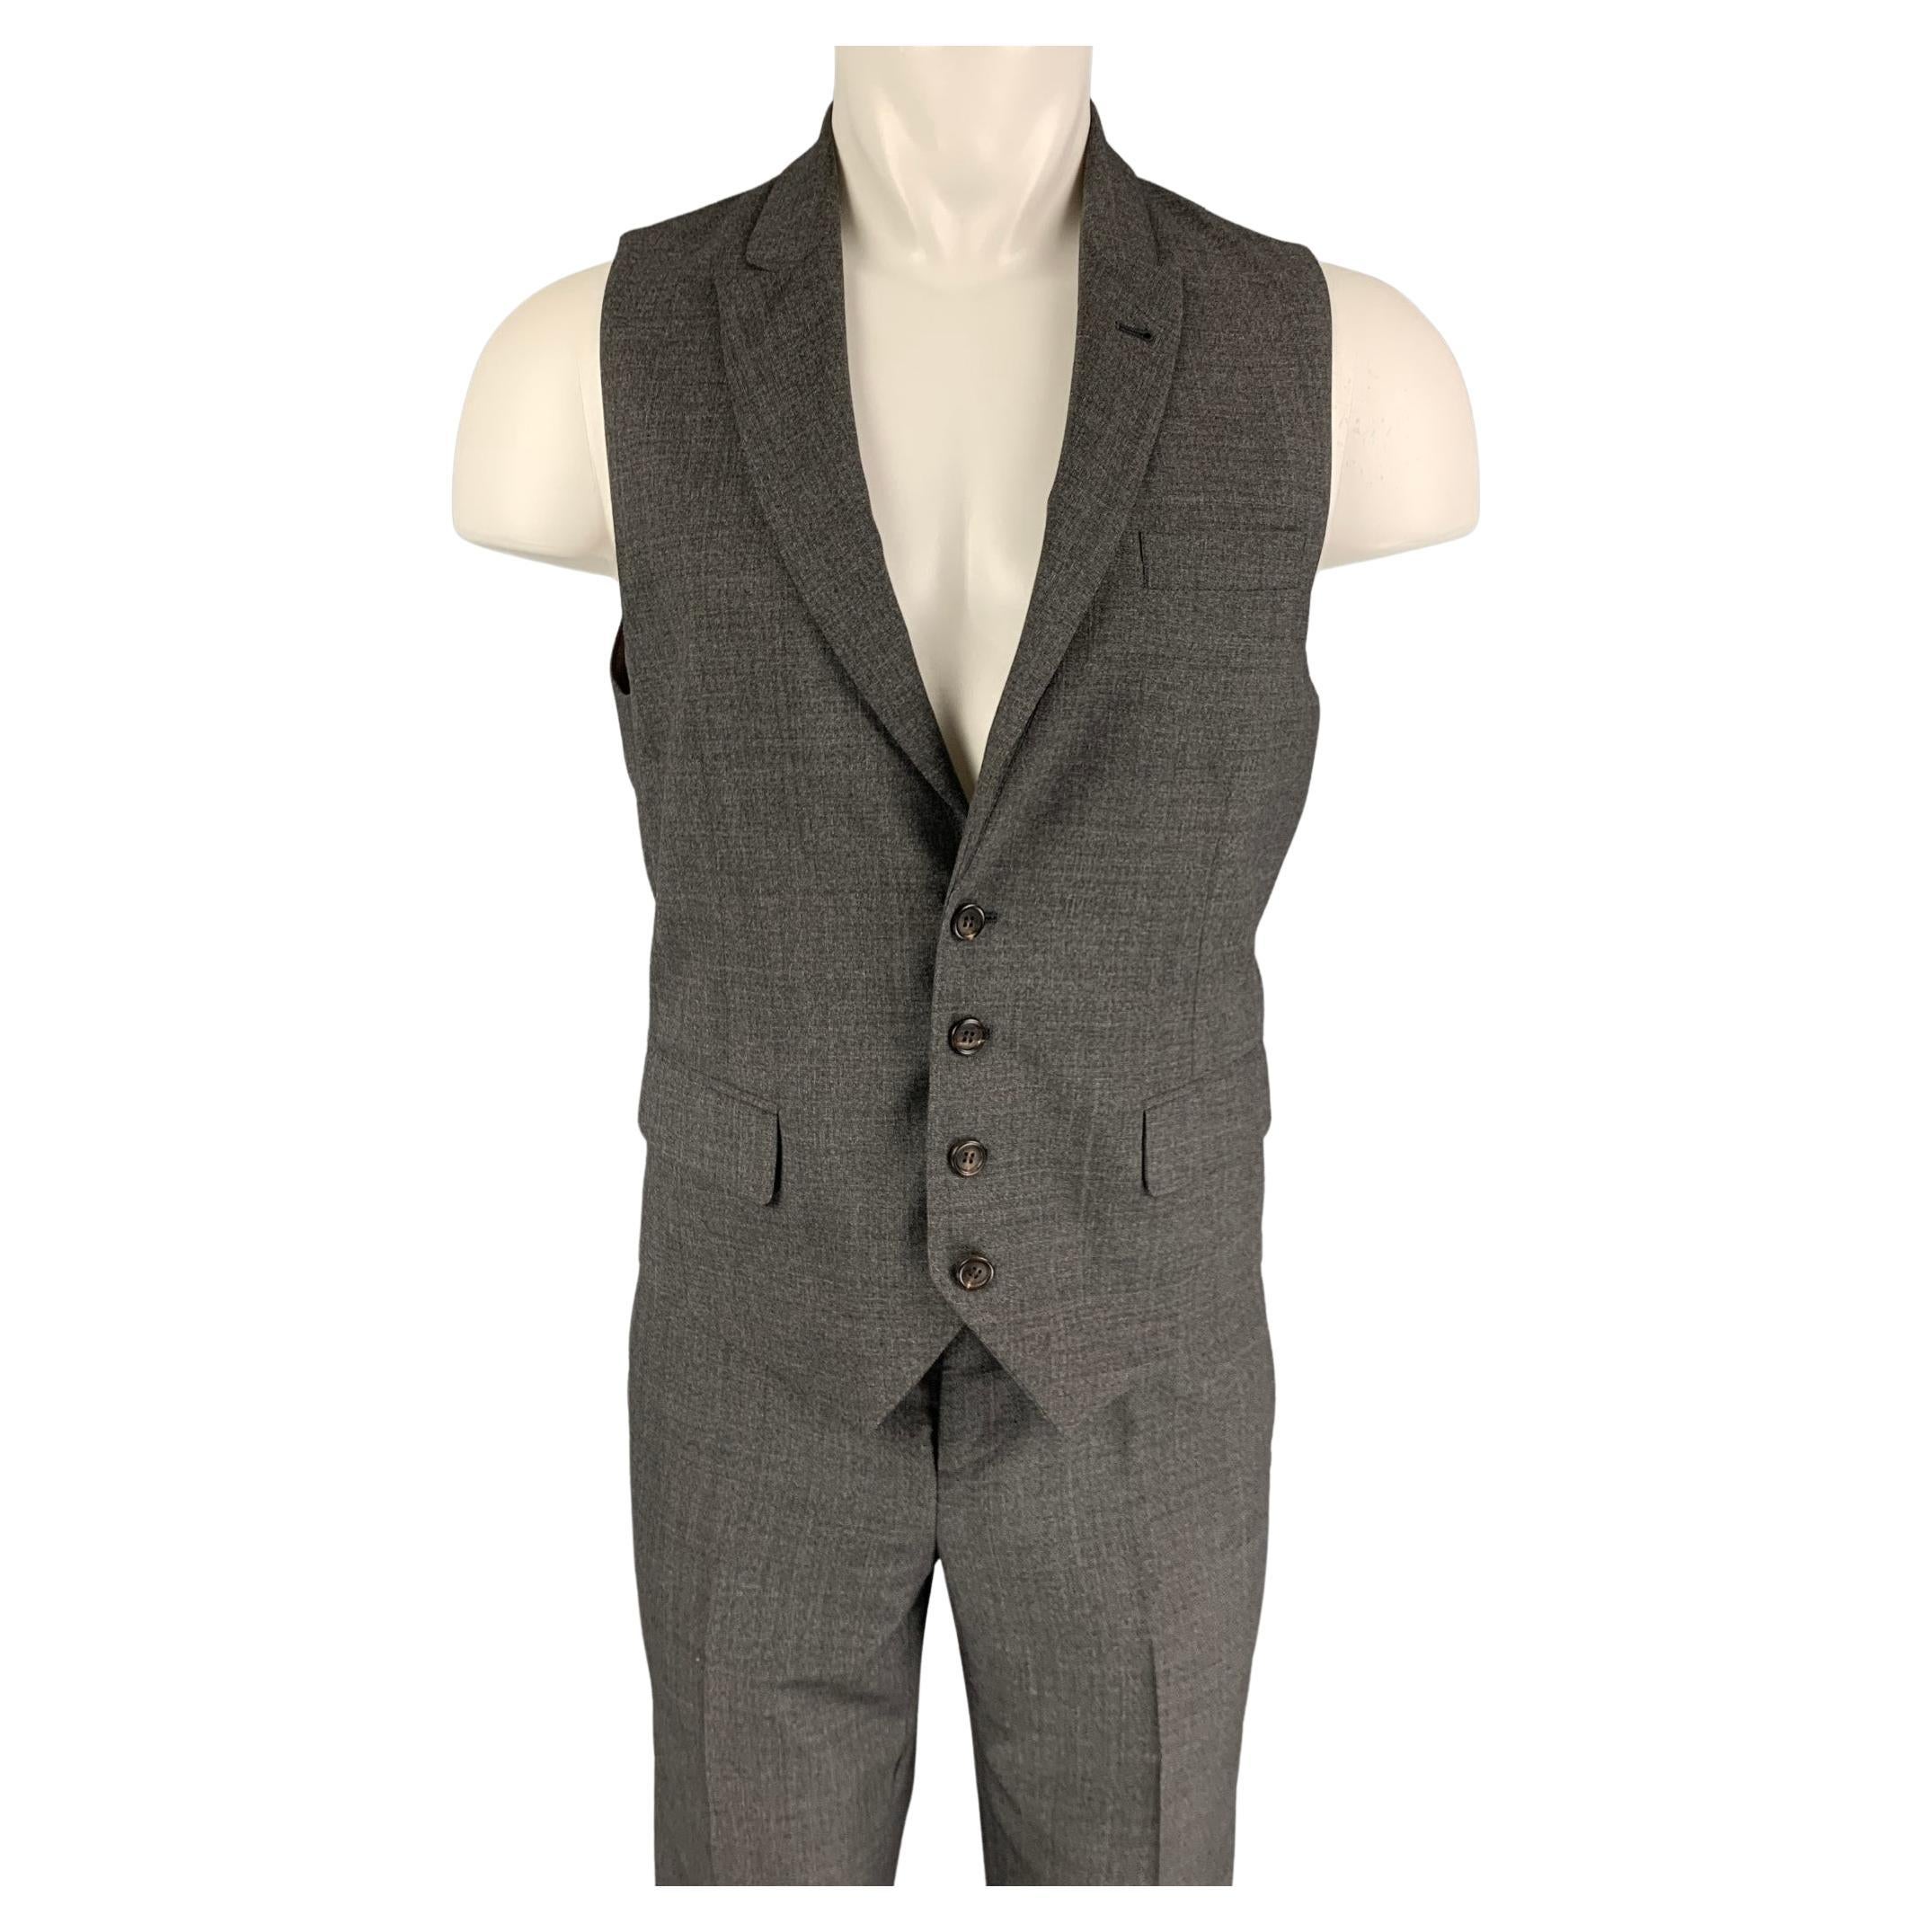 BRUNELLO CUCINELLI Size 38 Grey Wool Vest Suit